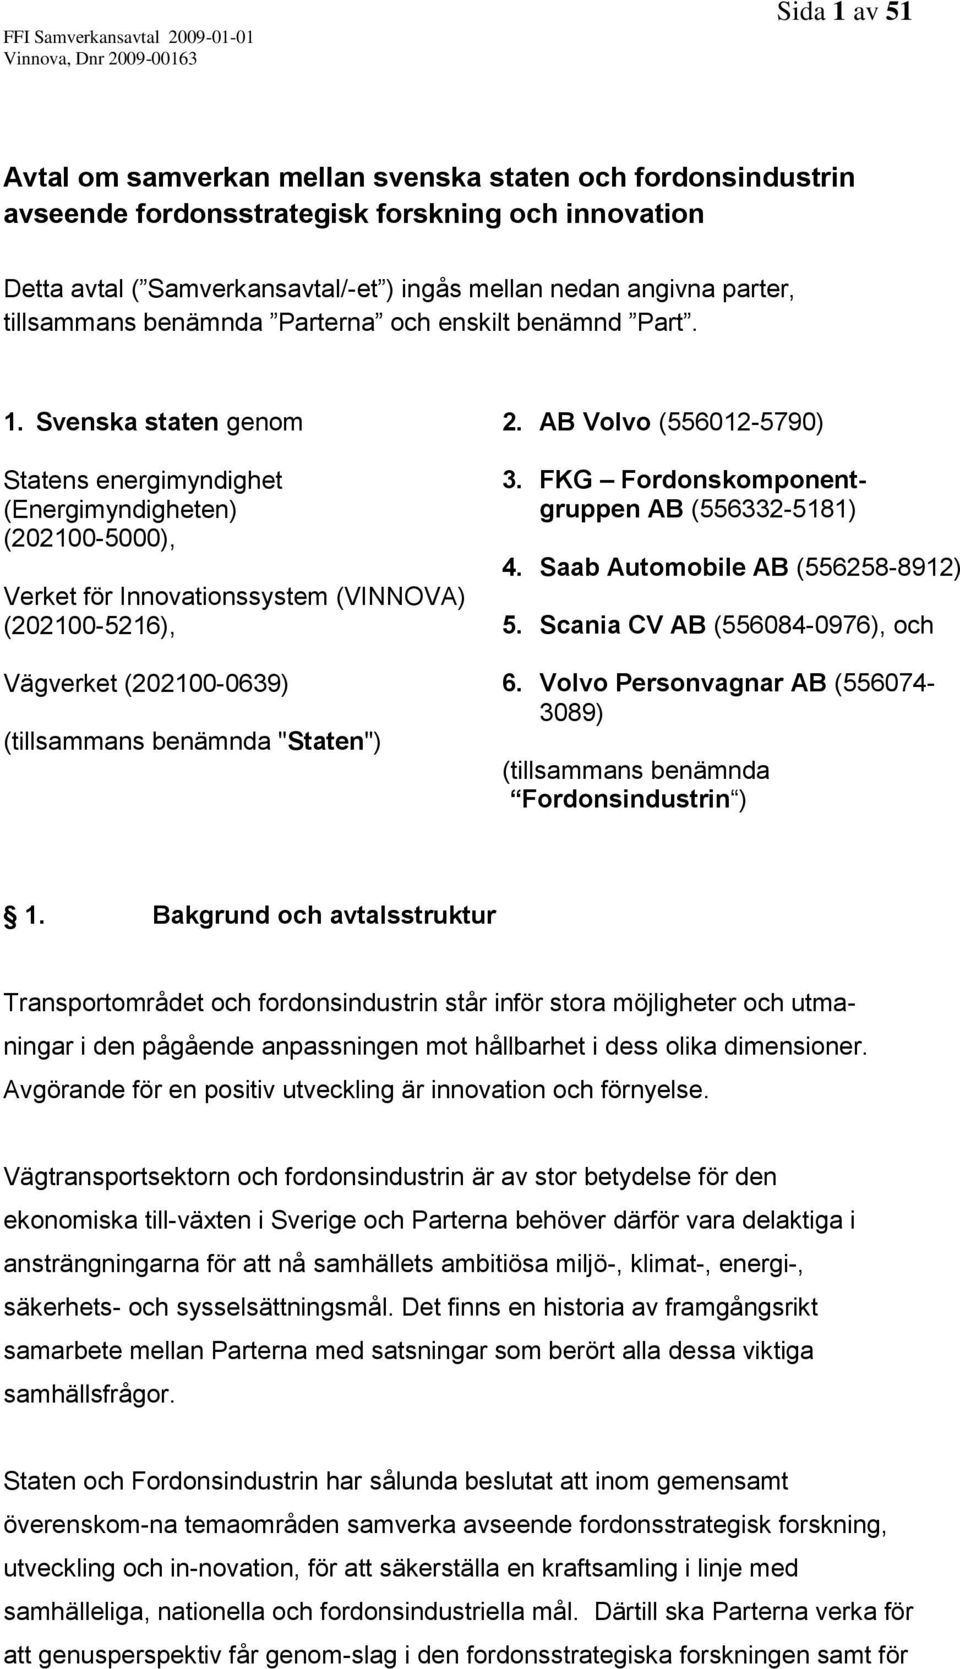 Svenska staten genom Statens energimyndighet (Energimyndigheten) (202100-5000), Verket för Innovationssystem (VINNOVA) (202100-5216), Vägverket (202100-0639) (tillsammans benämnda "Staten") 2.